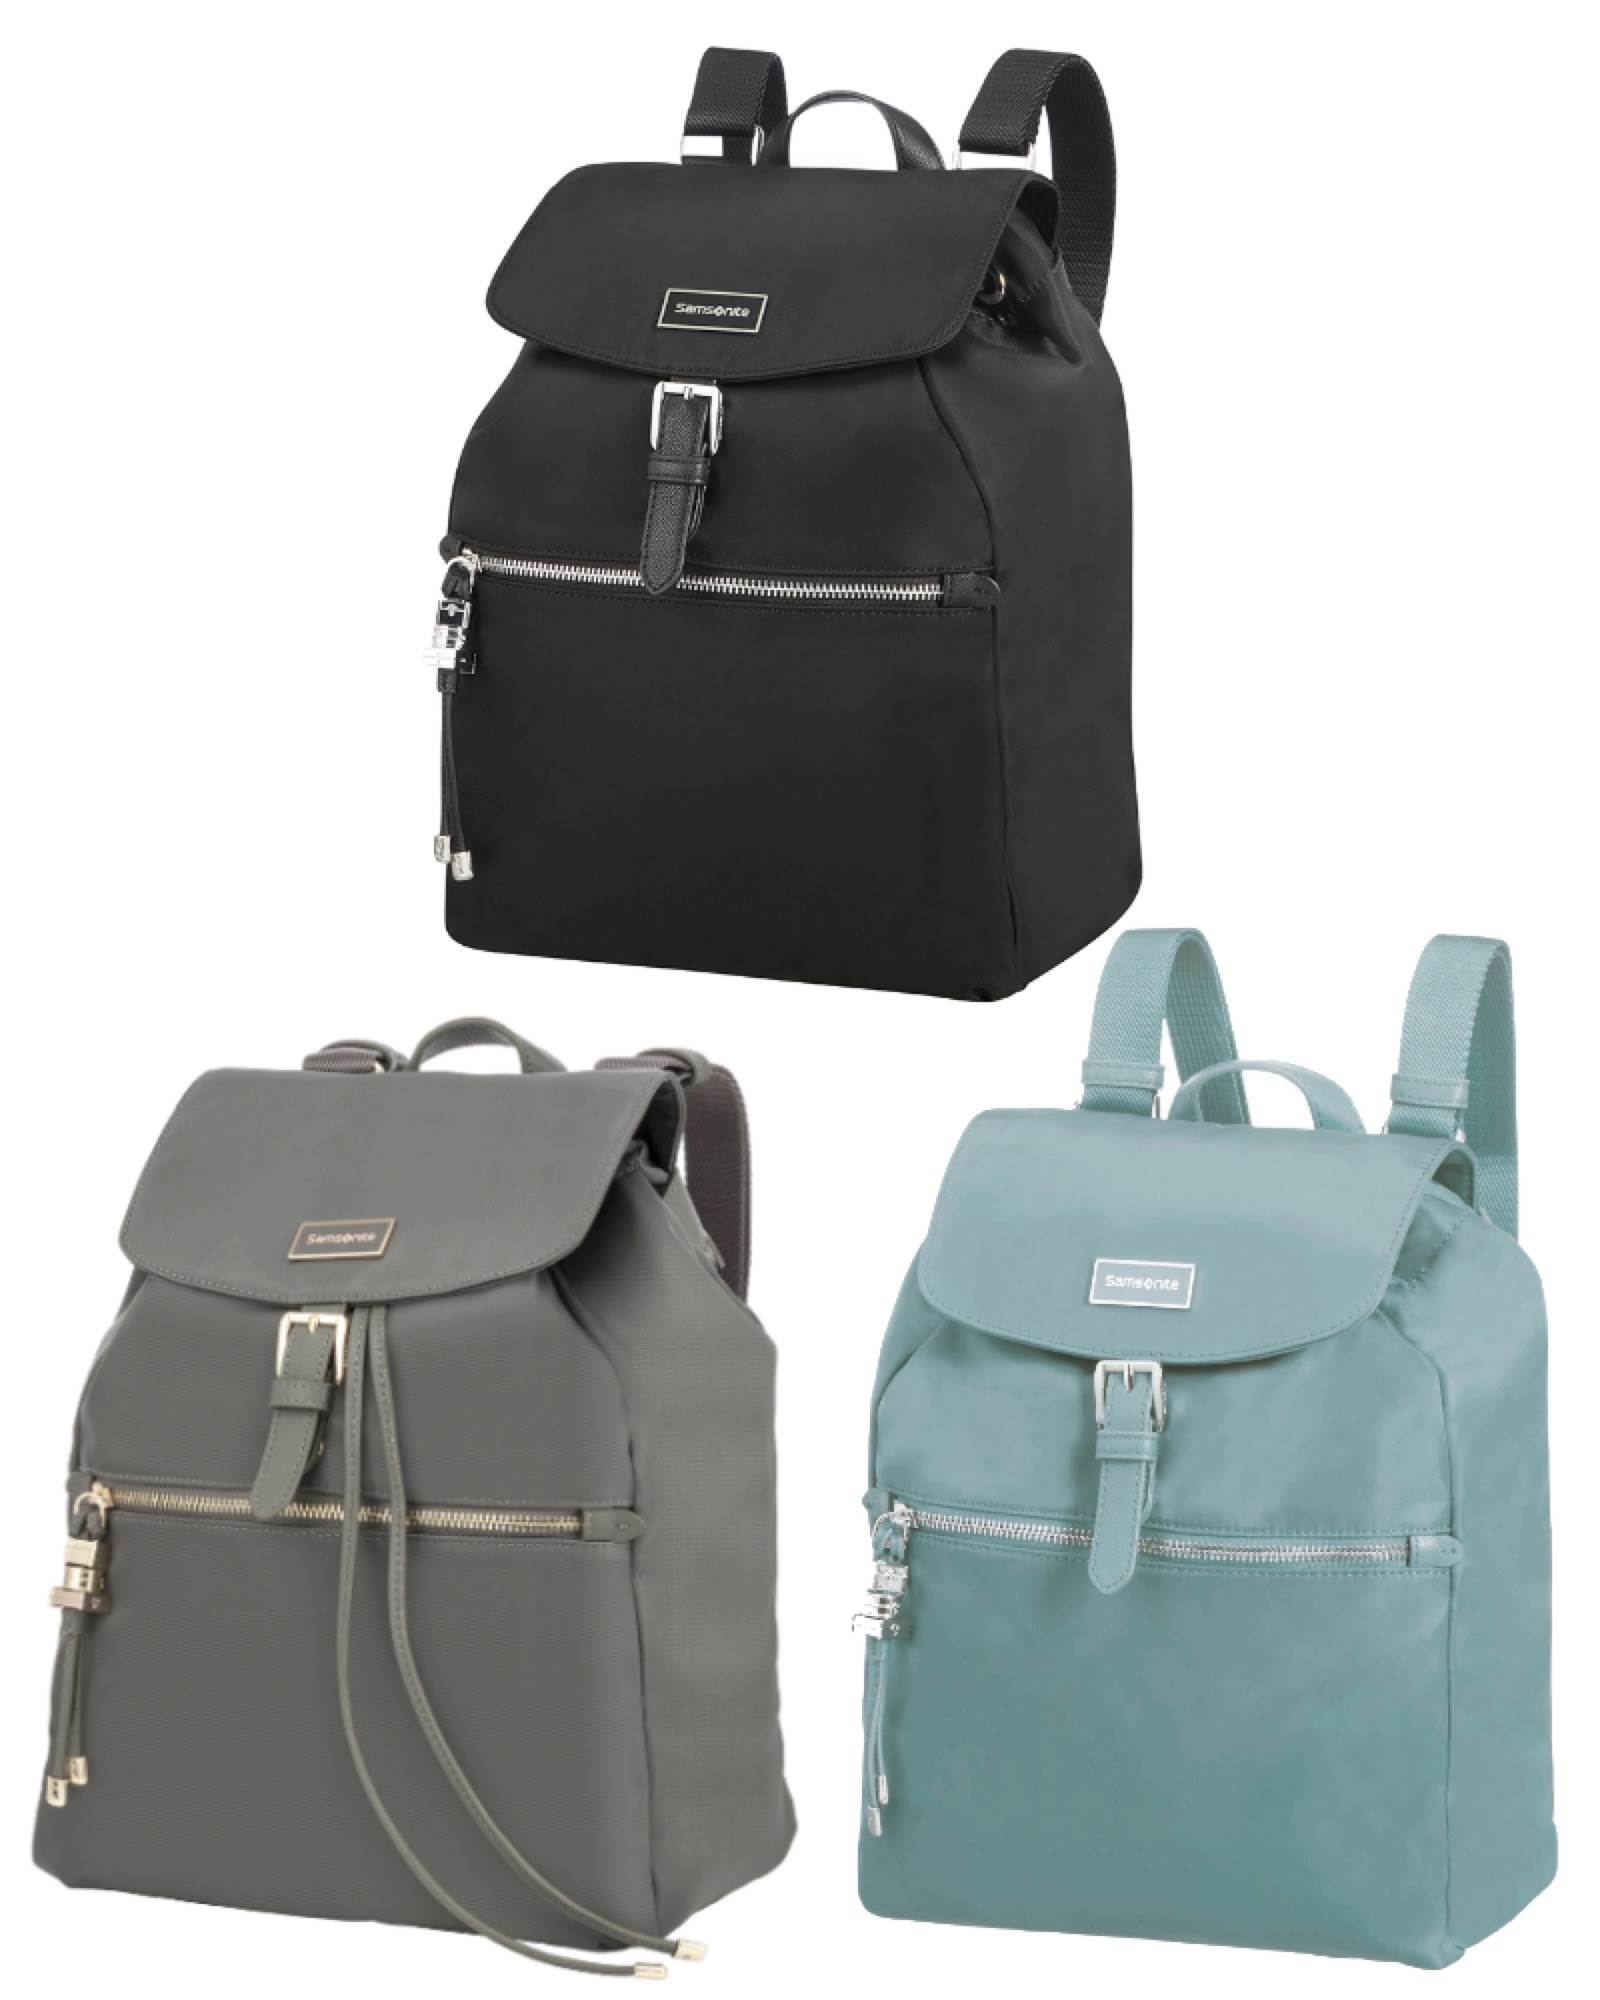 acer backpack laptop bag